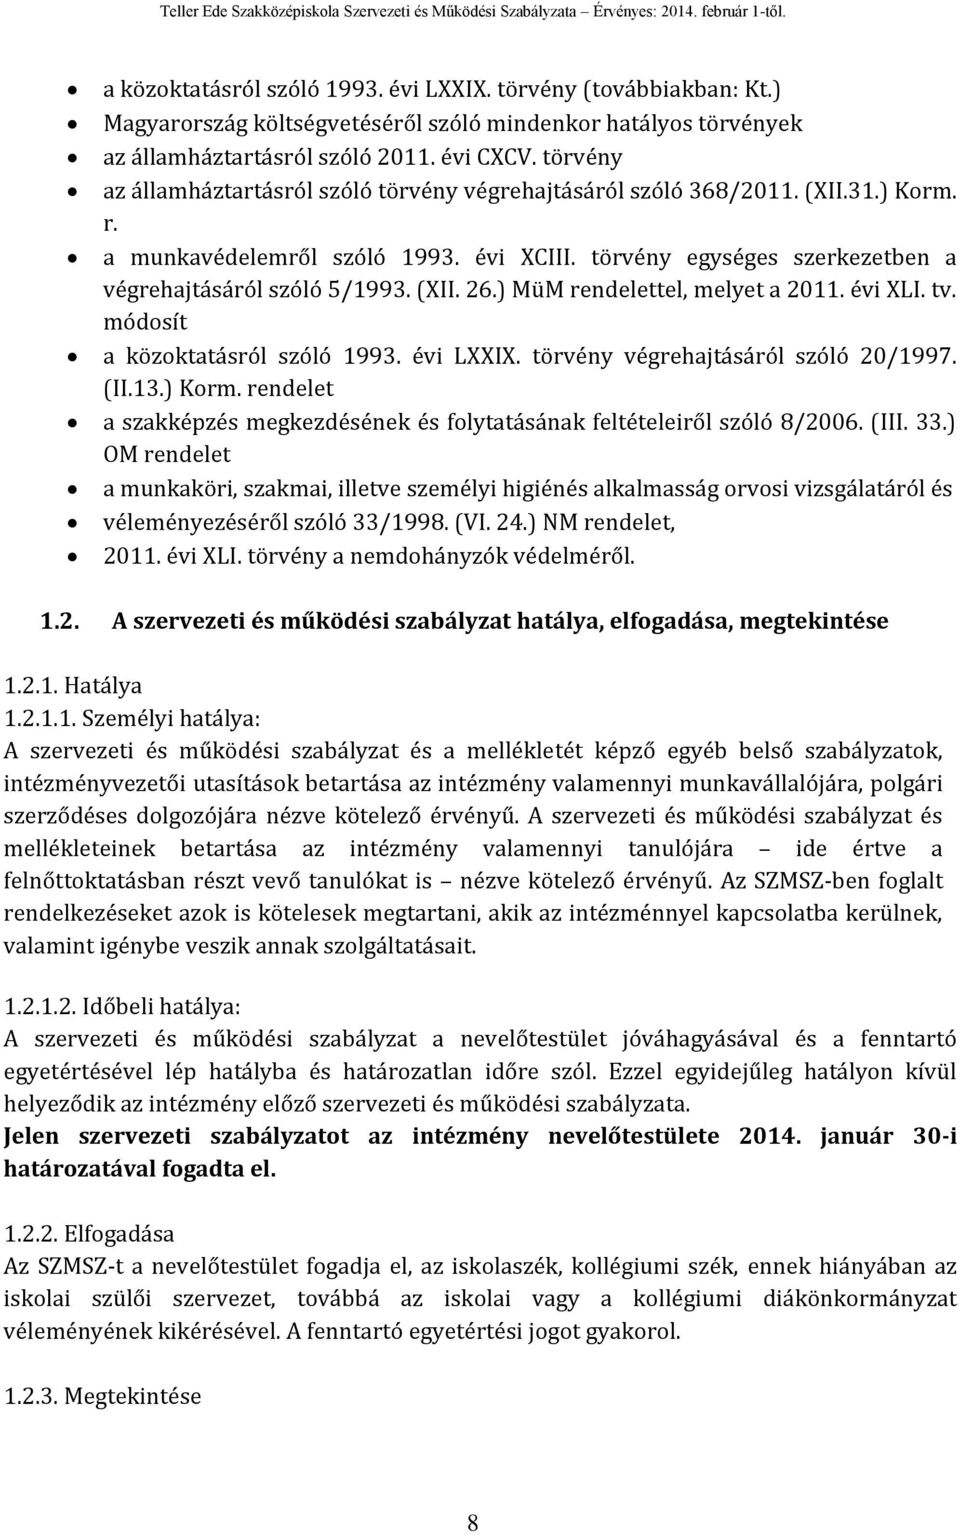 (XII. 26.) MüM rendelettel, melyet a 2011. évi XLI. tv. módosít a közoktatásról szóló 1993. évi LXXIX. törvény végrehajtásáról szóló 20/1997. (II.13.) Korm.